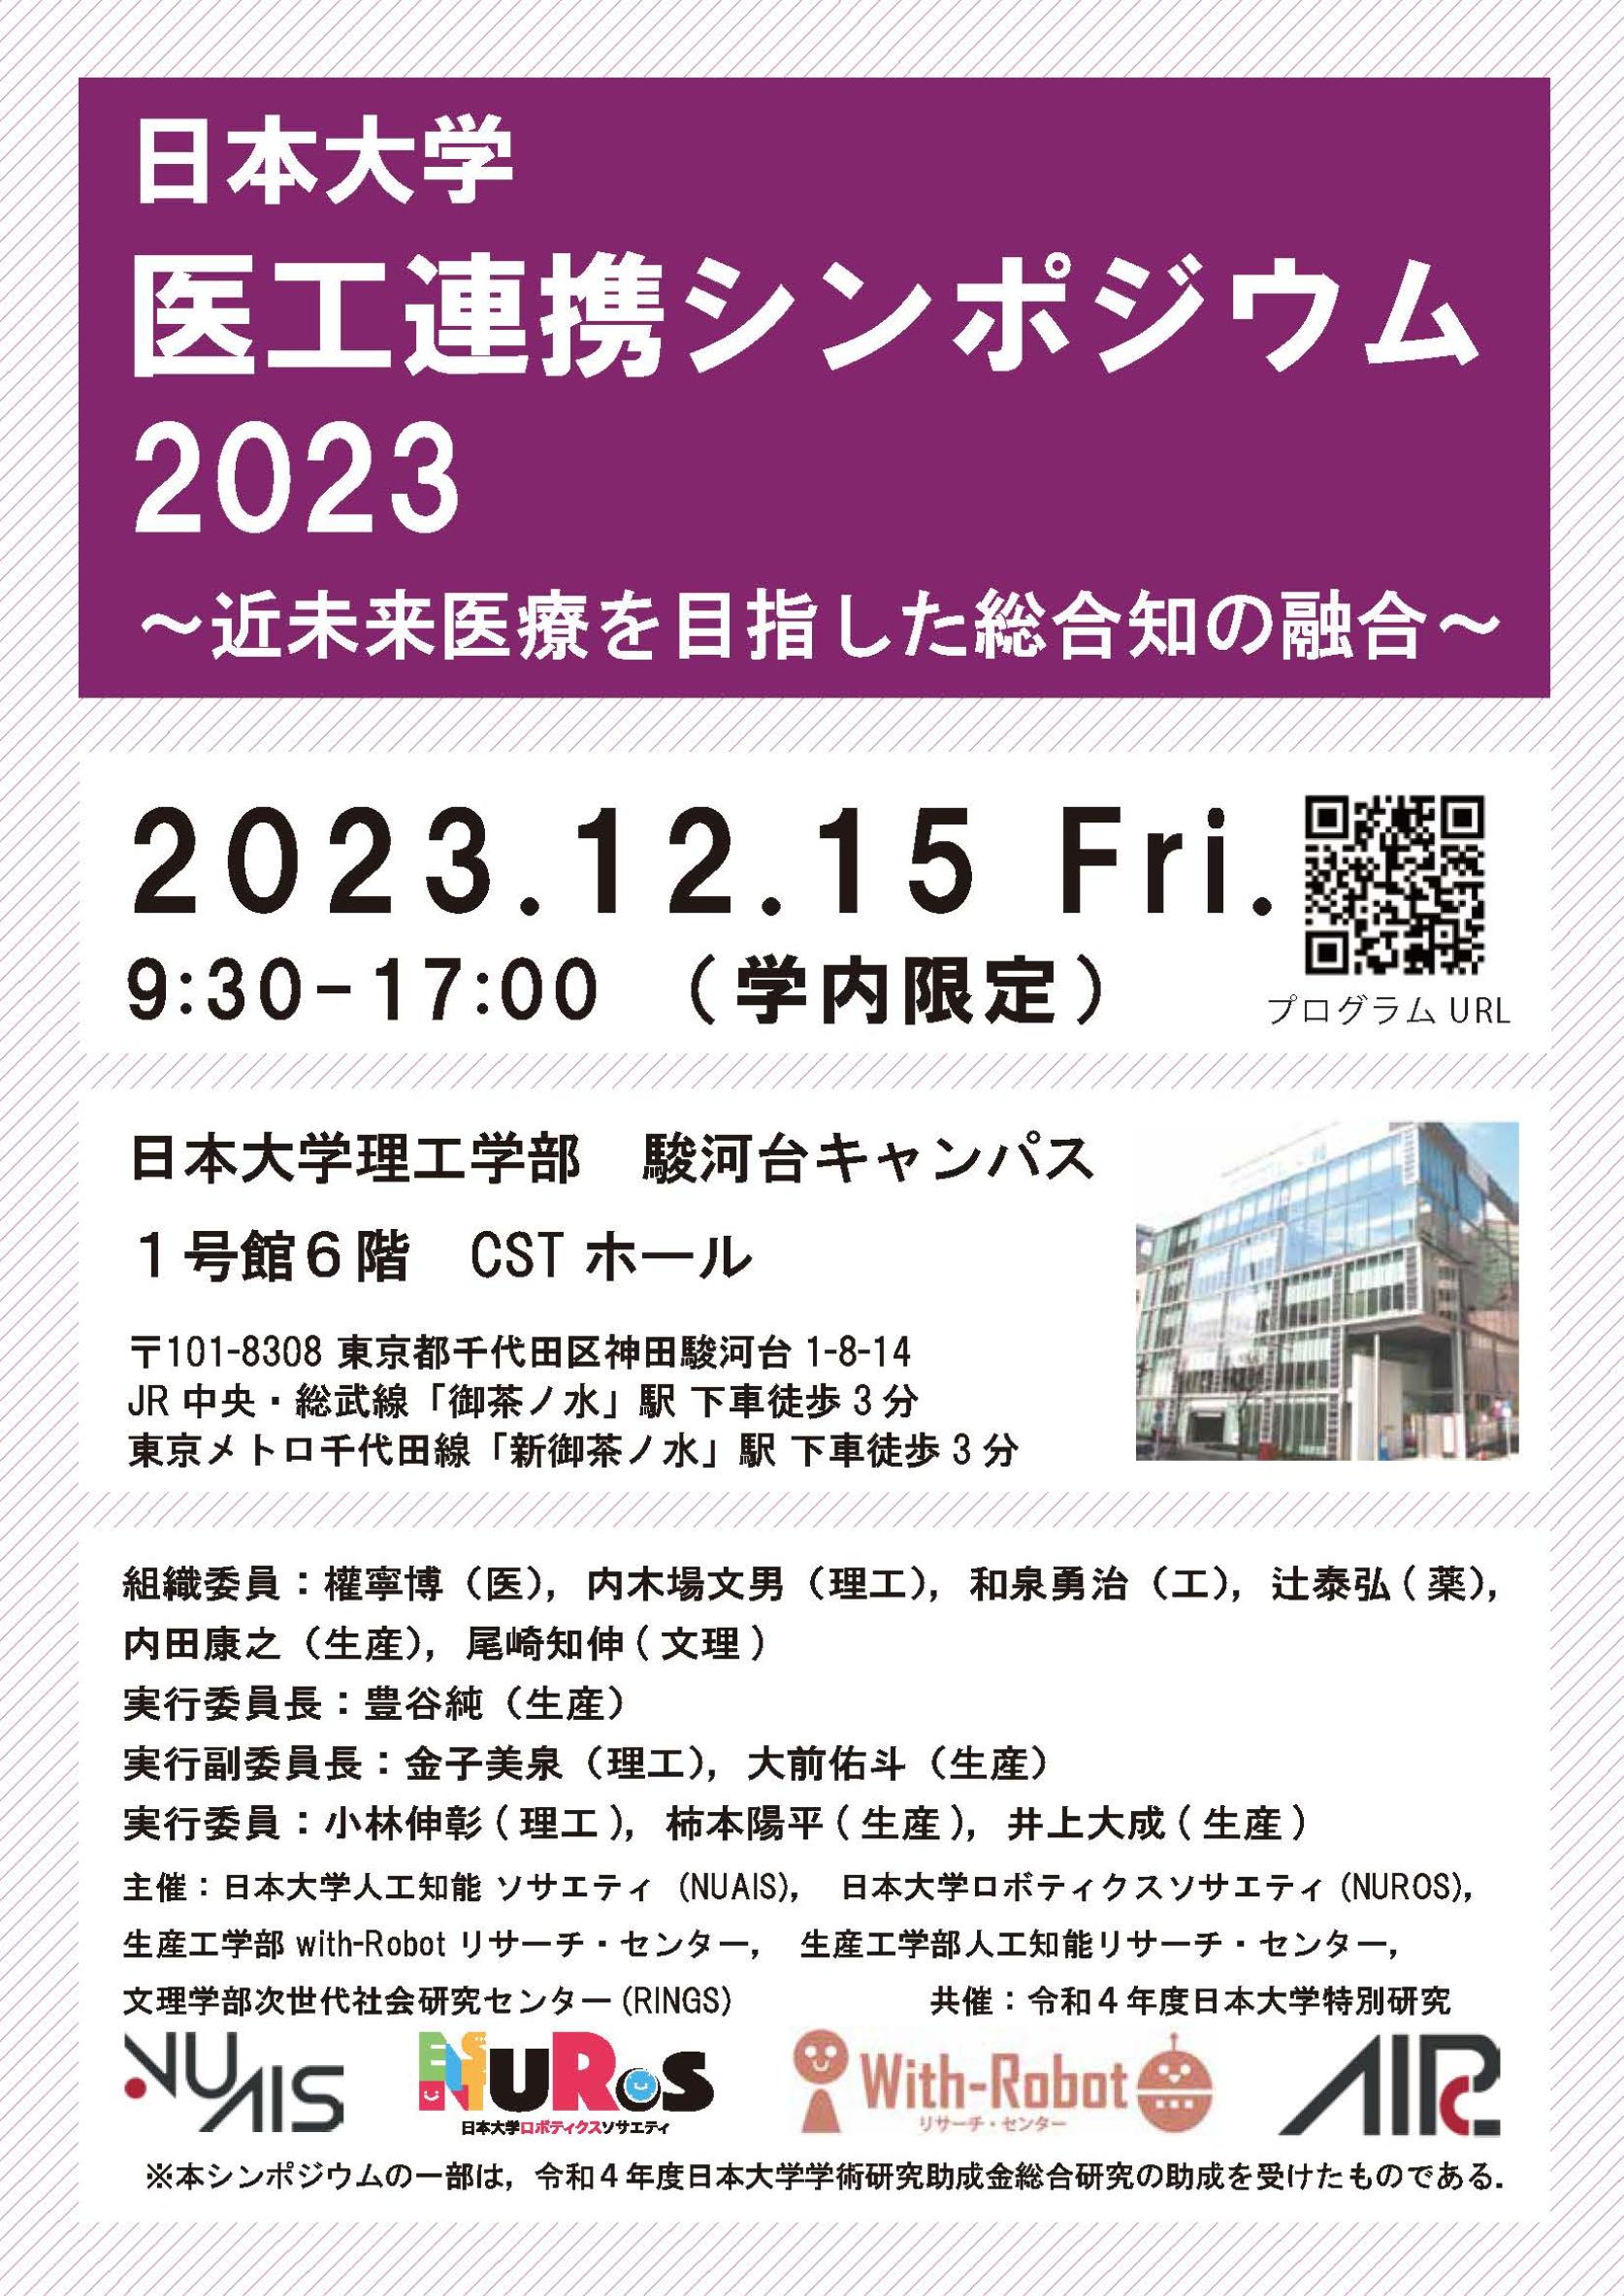 【学内者向け：12月15日(金)開催】日本大学医工連携シンポジウム2023～近未来医療を目指した総合知の融合～